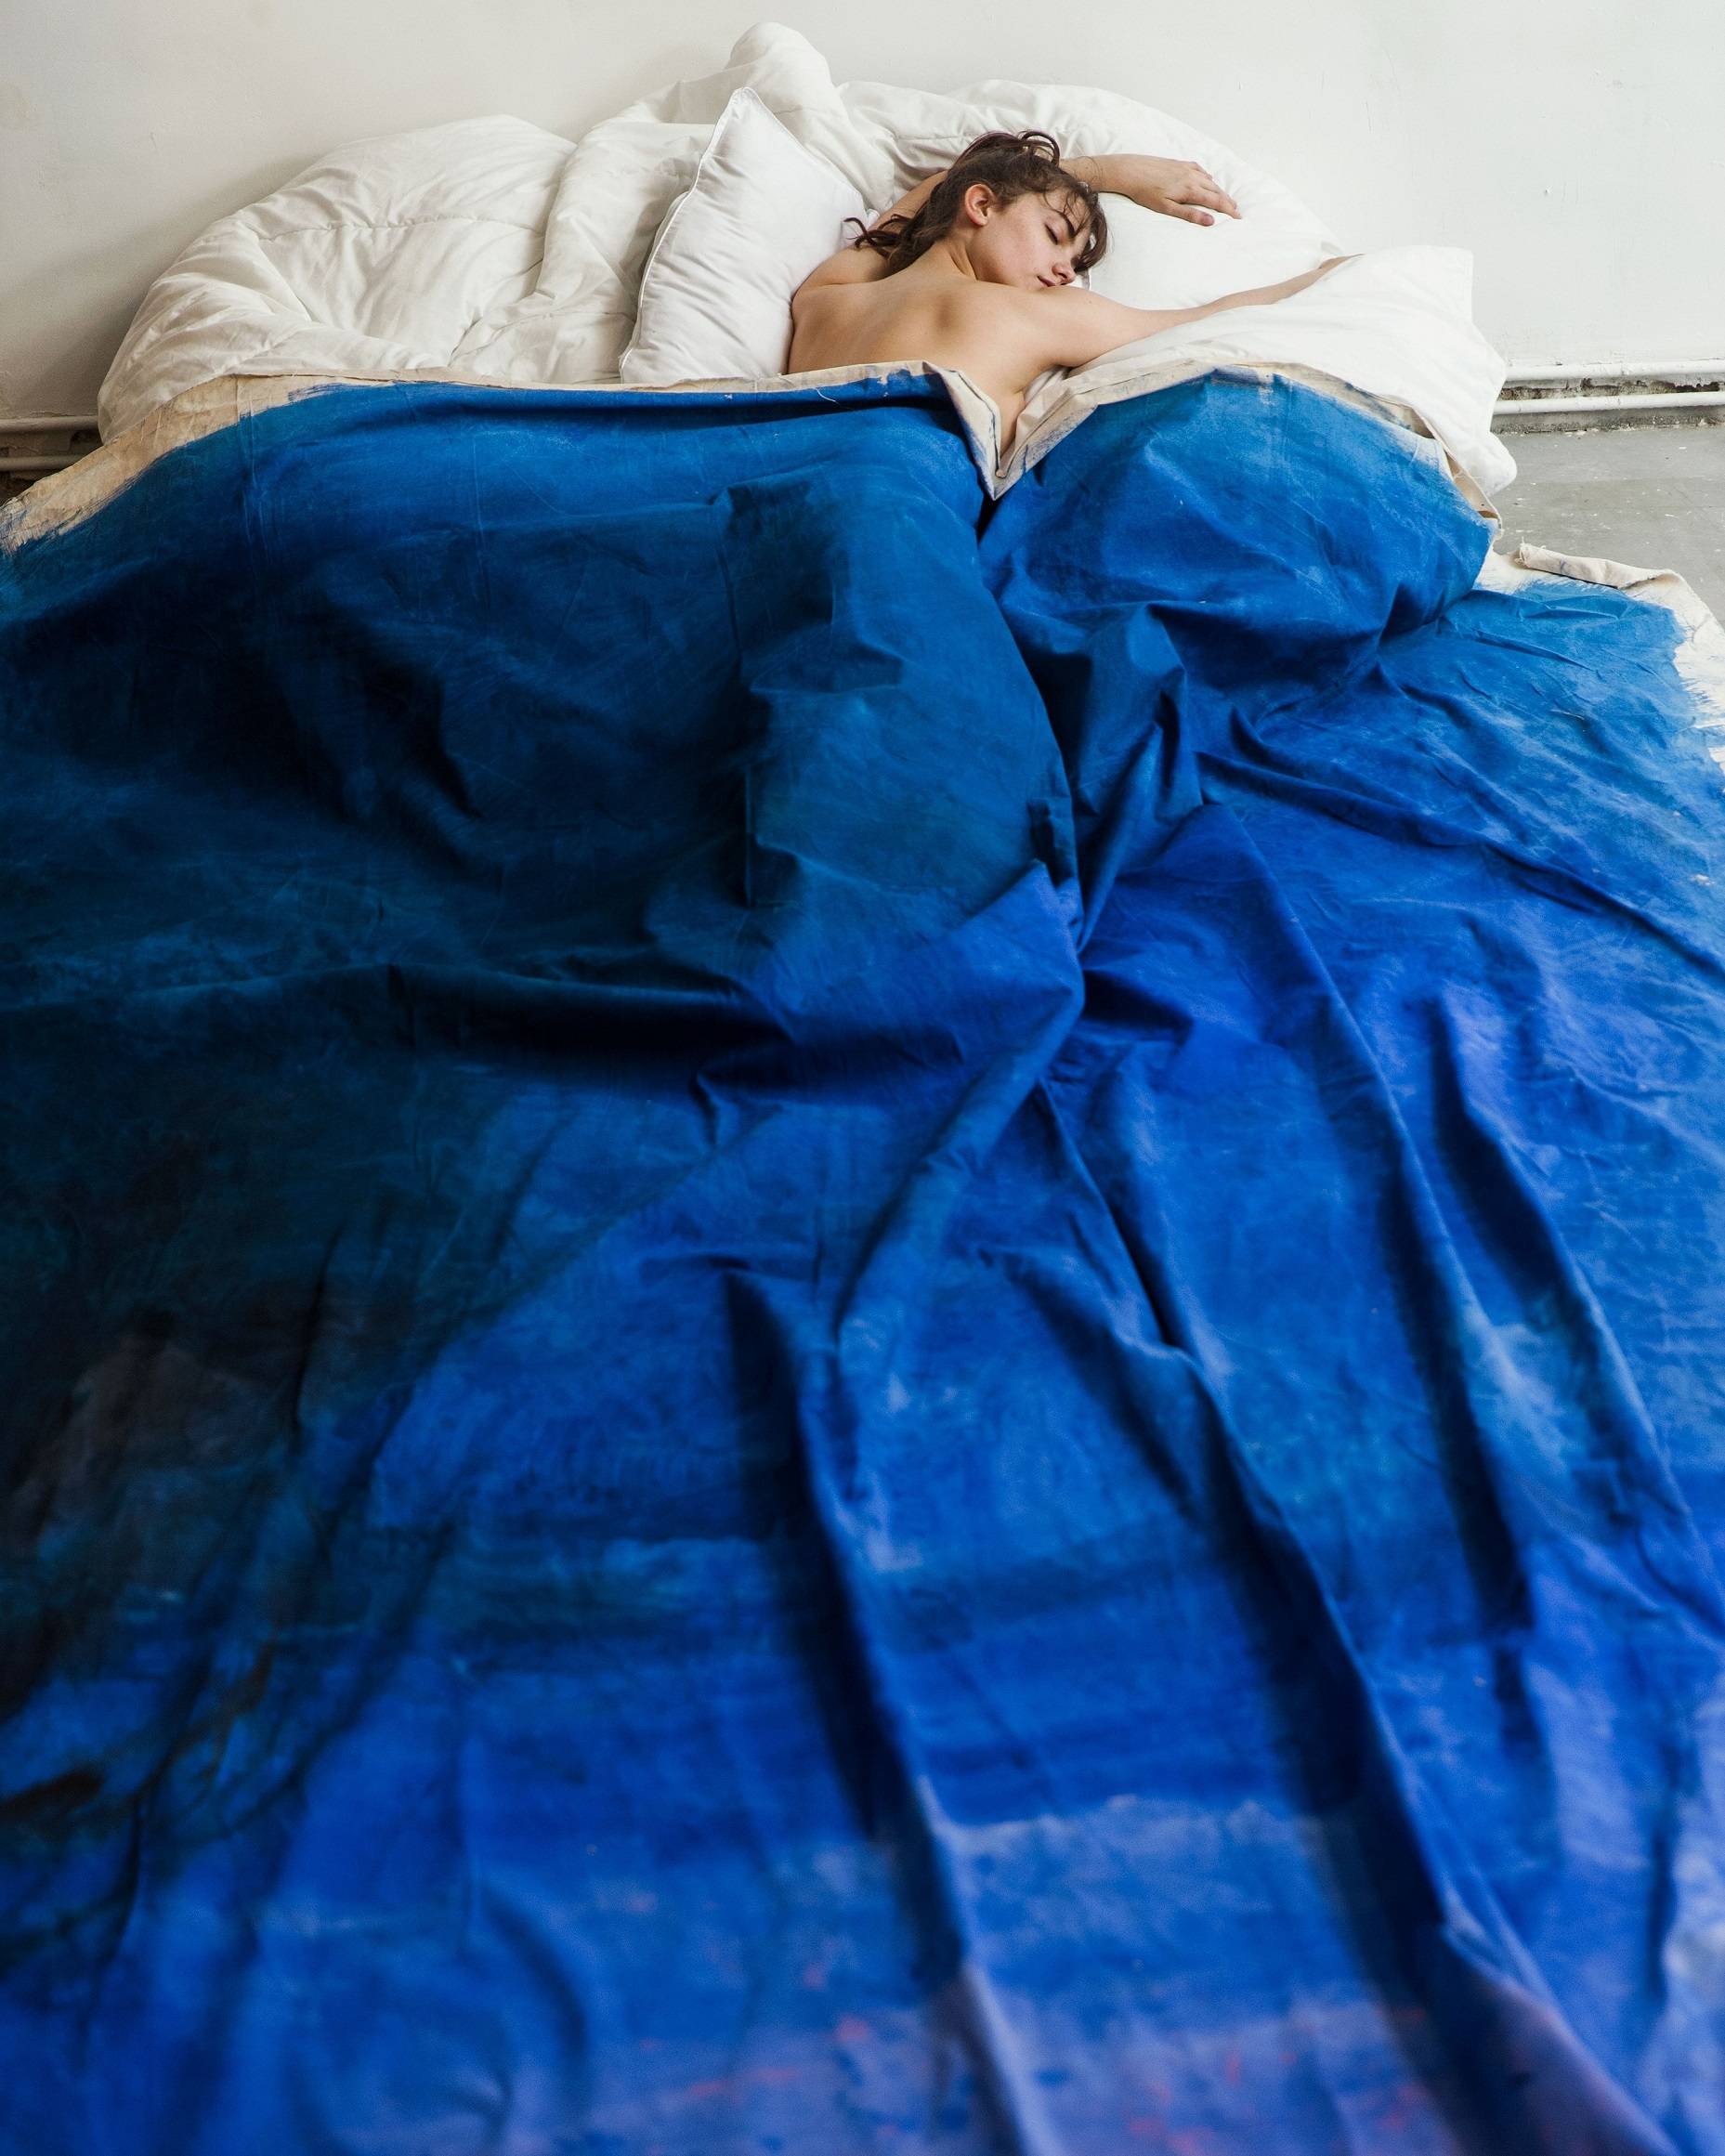 "Claire et le lit bleu" par Charlotte Abramow, 2017. / Courtesy Maison Guerlain et Charlotte Abramow 